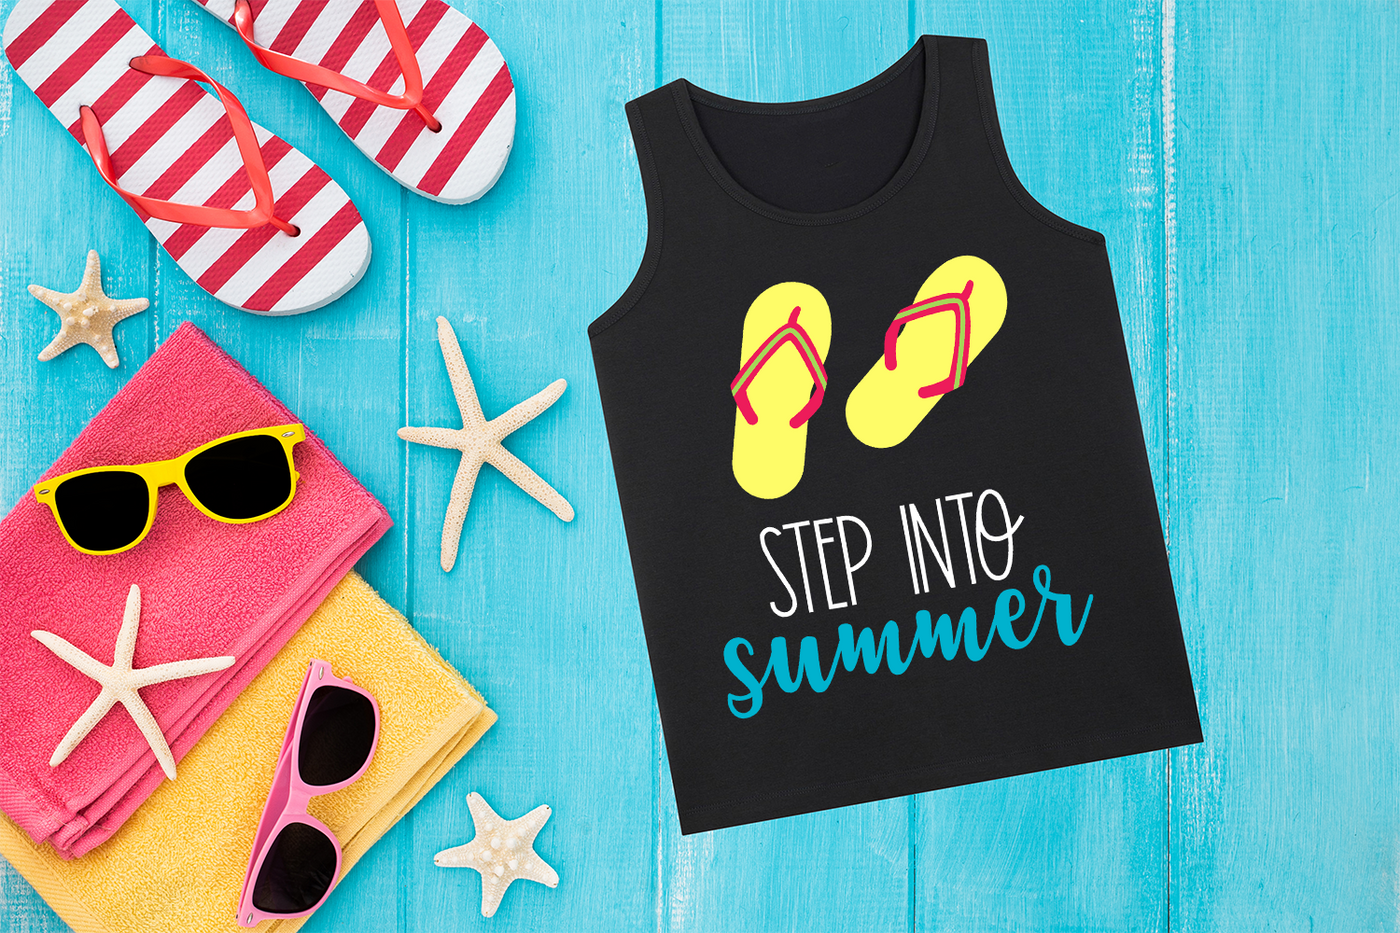 Step into summer flip flops SVG design